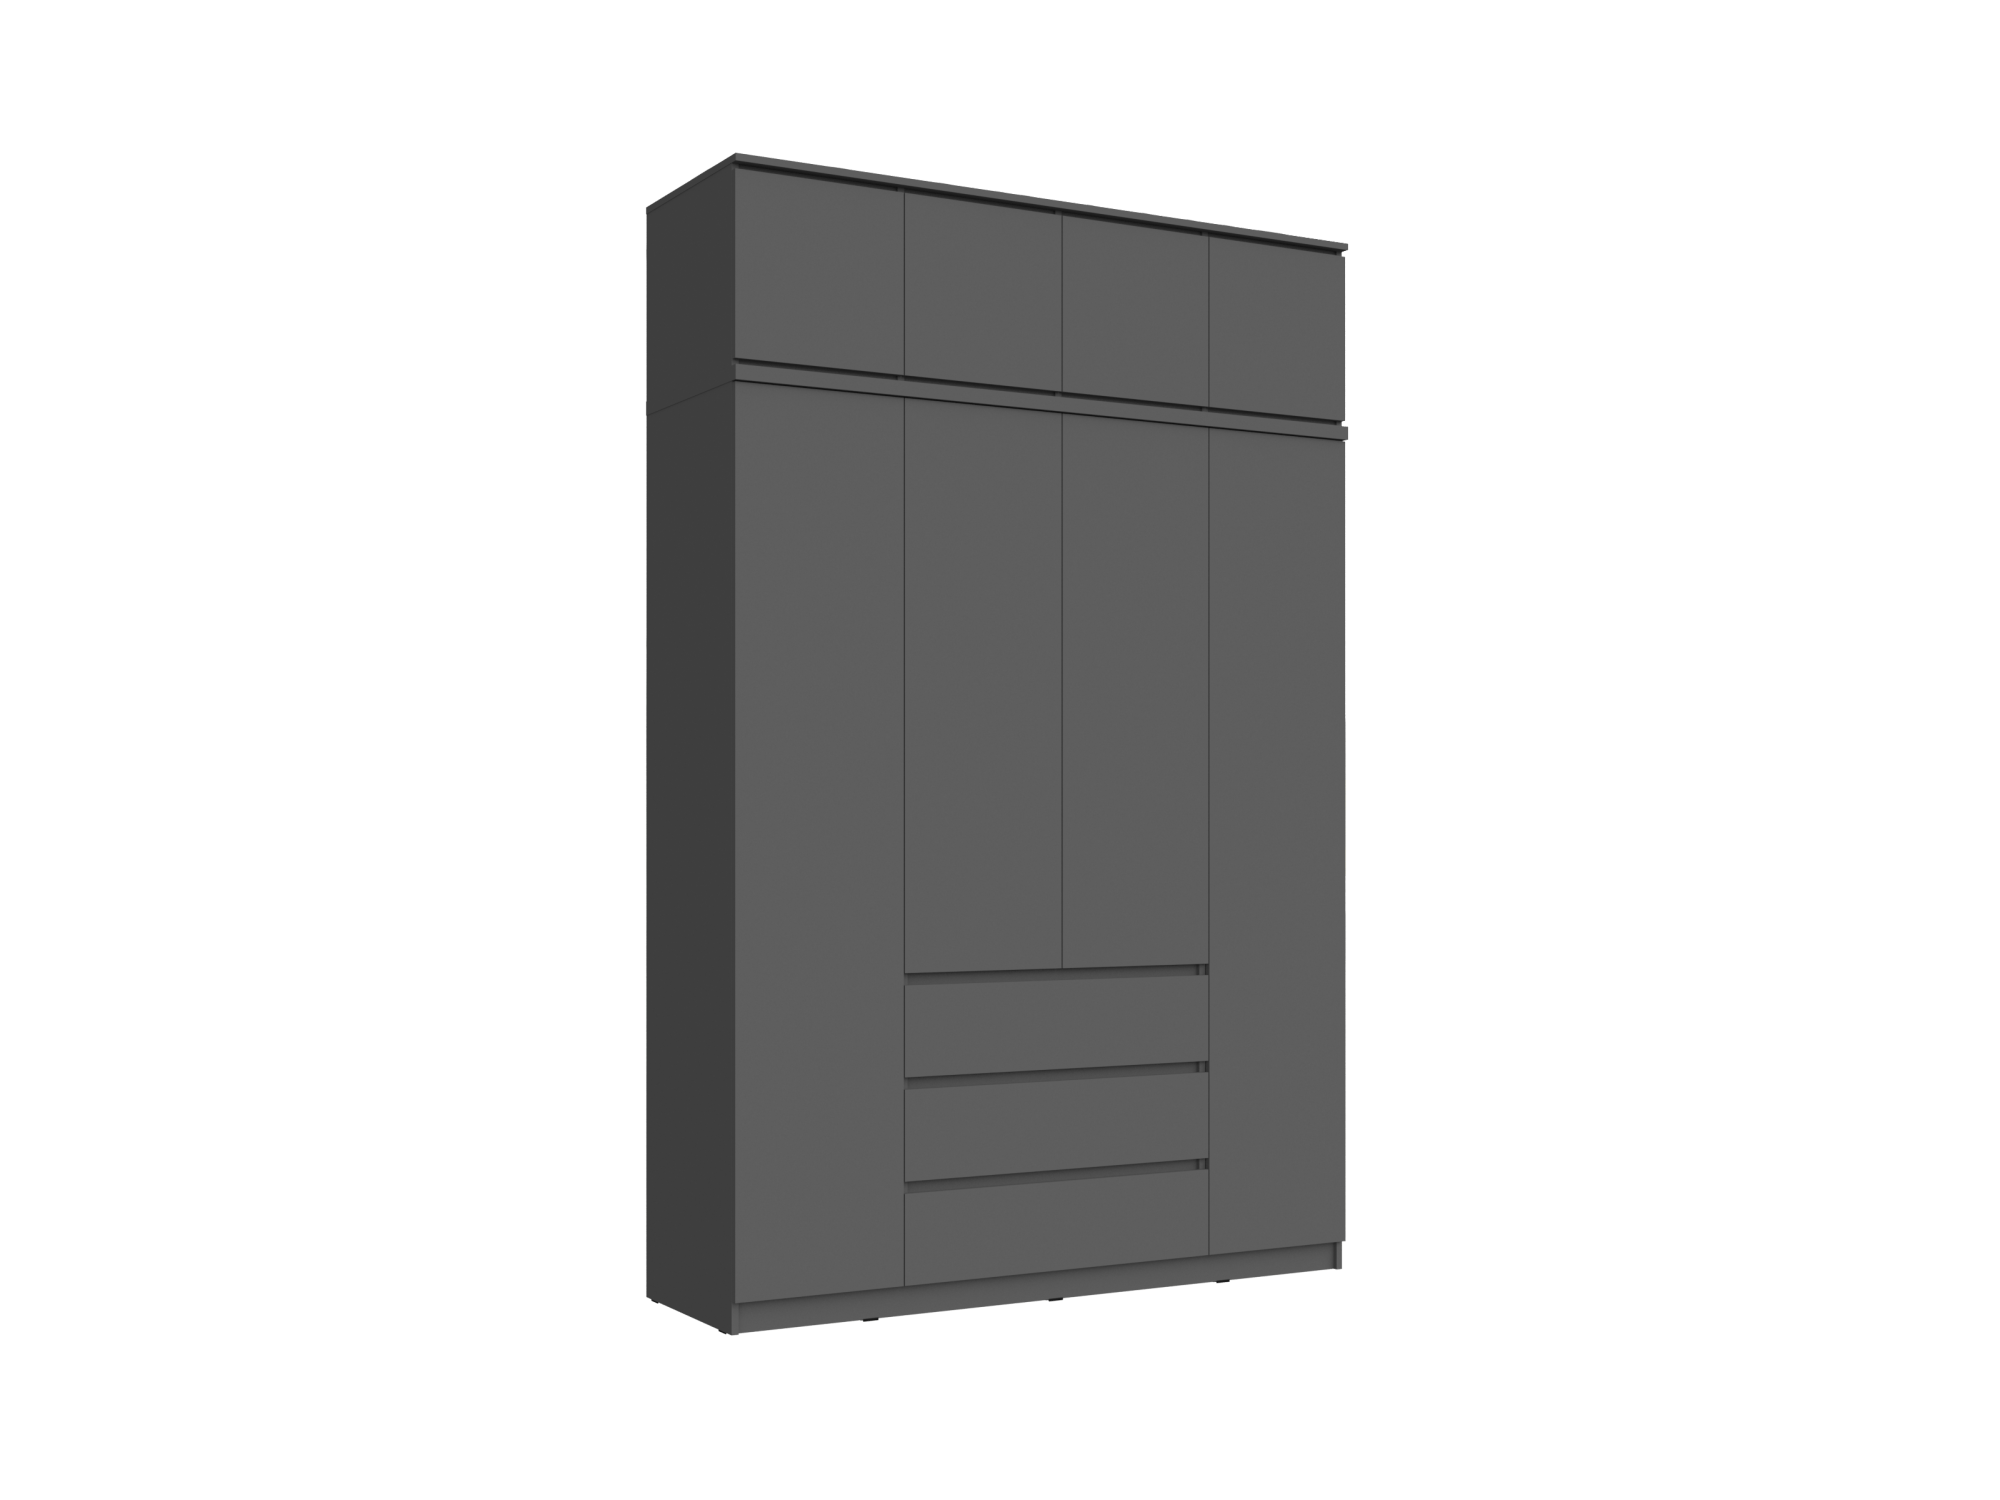 Челси Шкаф 1600 + антресоль 1600 (Графит, Графит) Черный, ЛДСП челси антресоль тумба универсальная графит графит черный лдсп